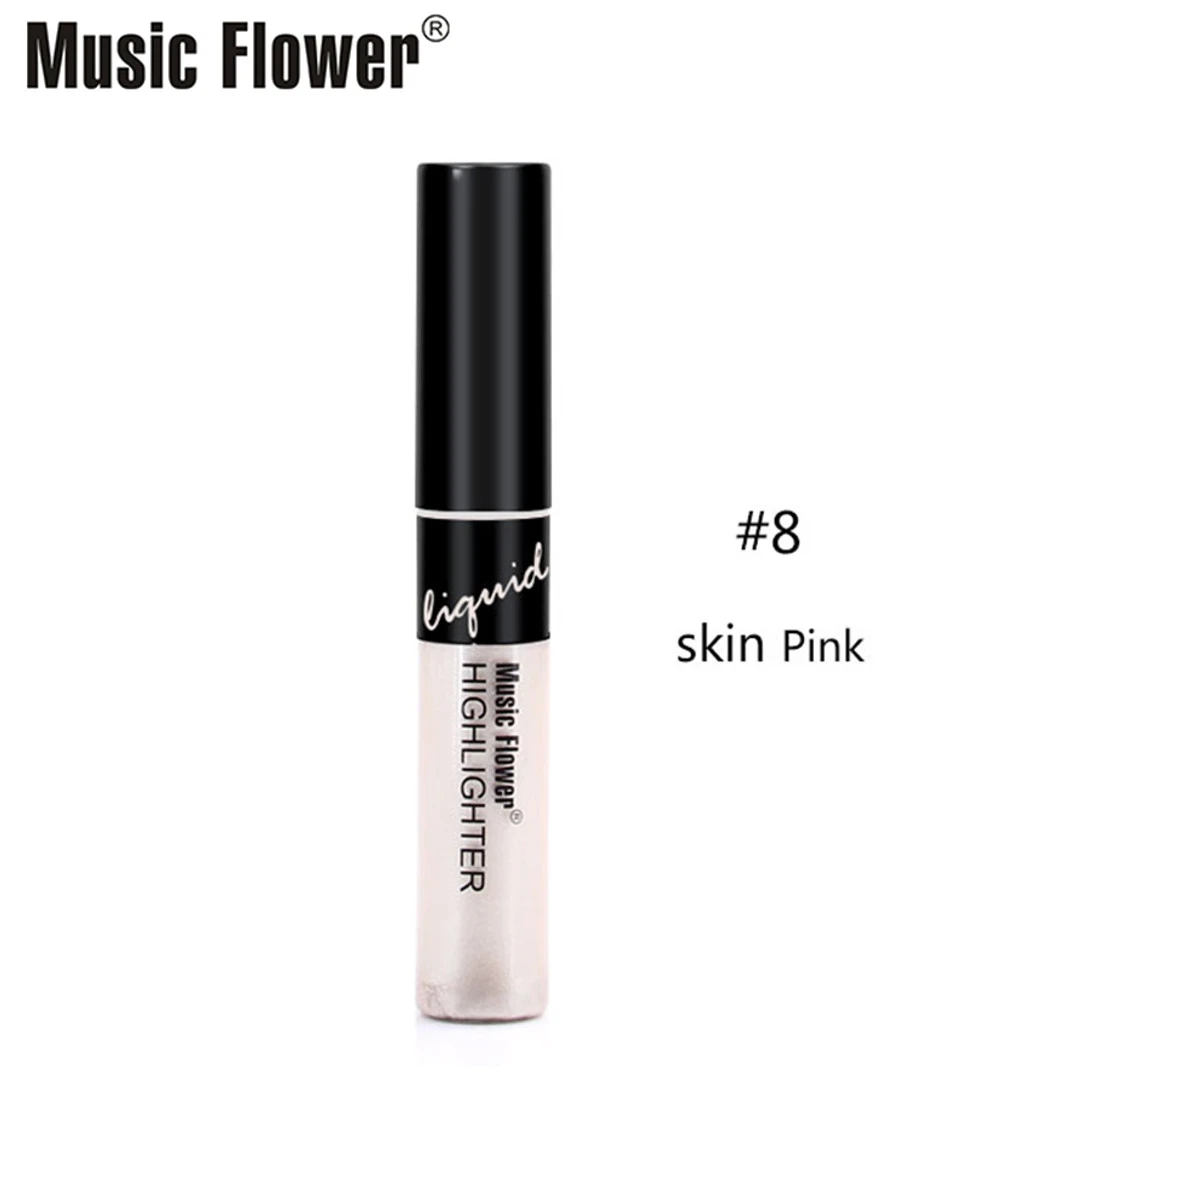 Find Music Flower Moisturizing Concealer Makeup Concealer Long Lasting Face Contour for Sale on Gipsybee.com